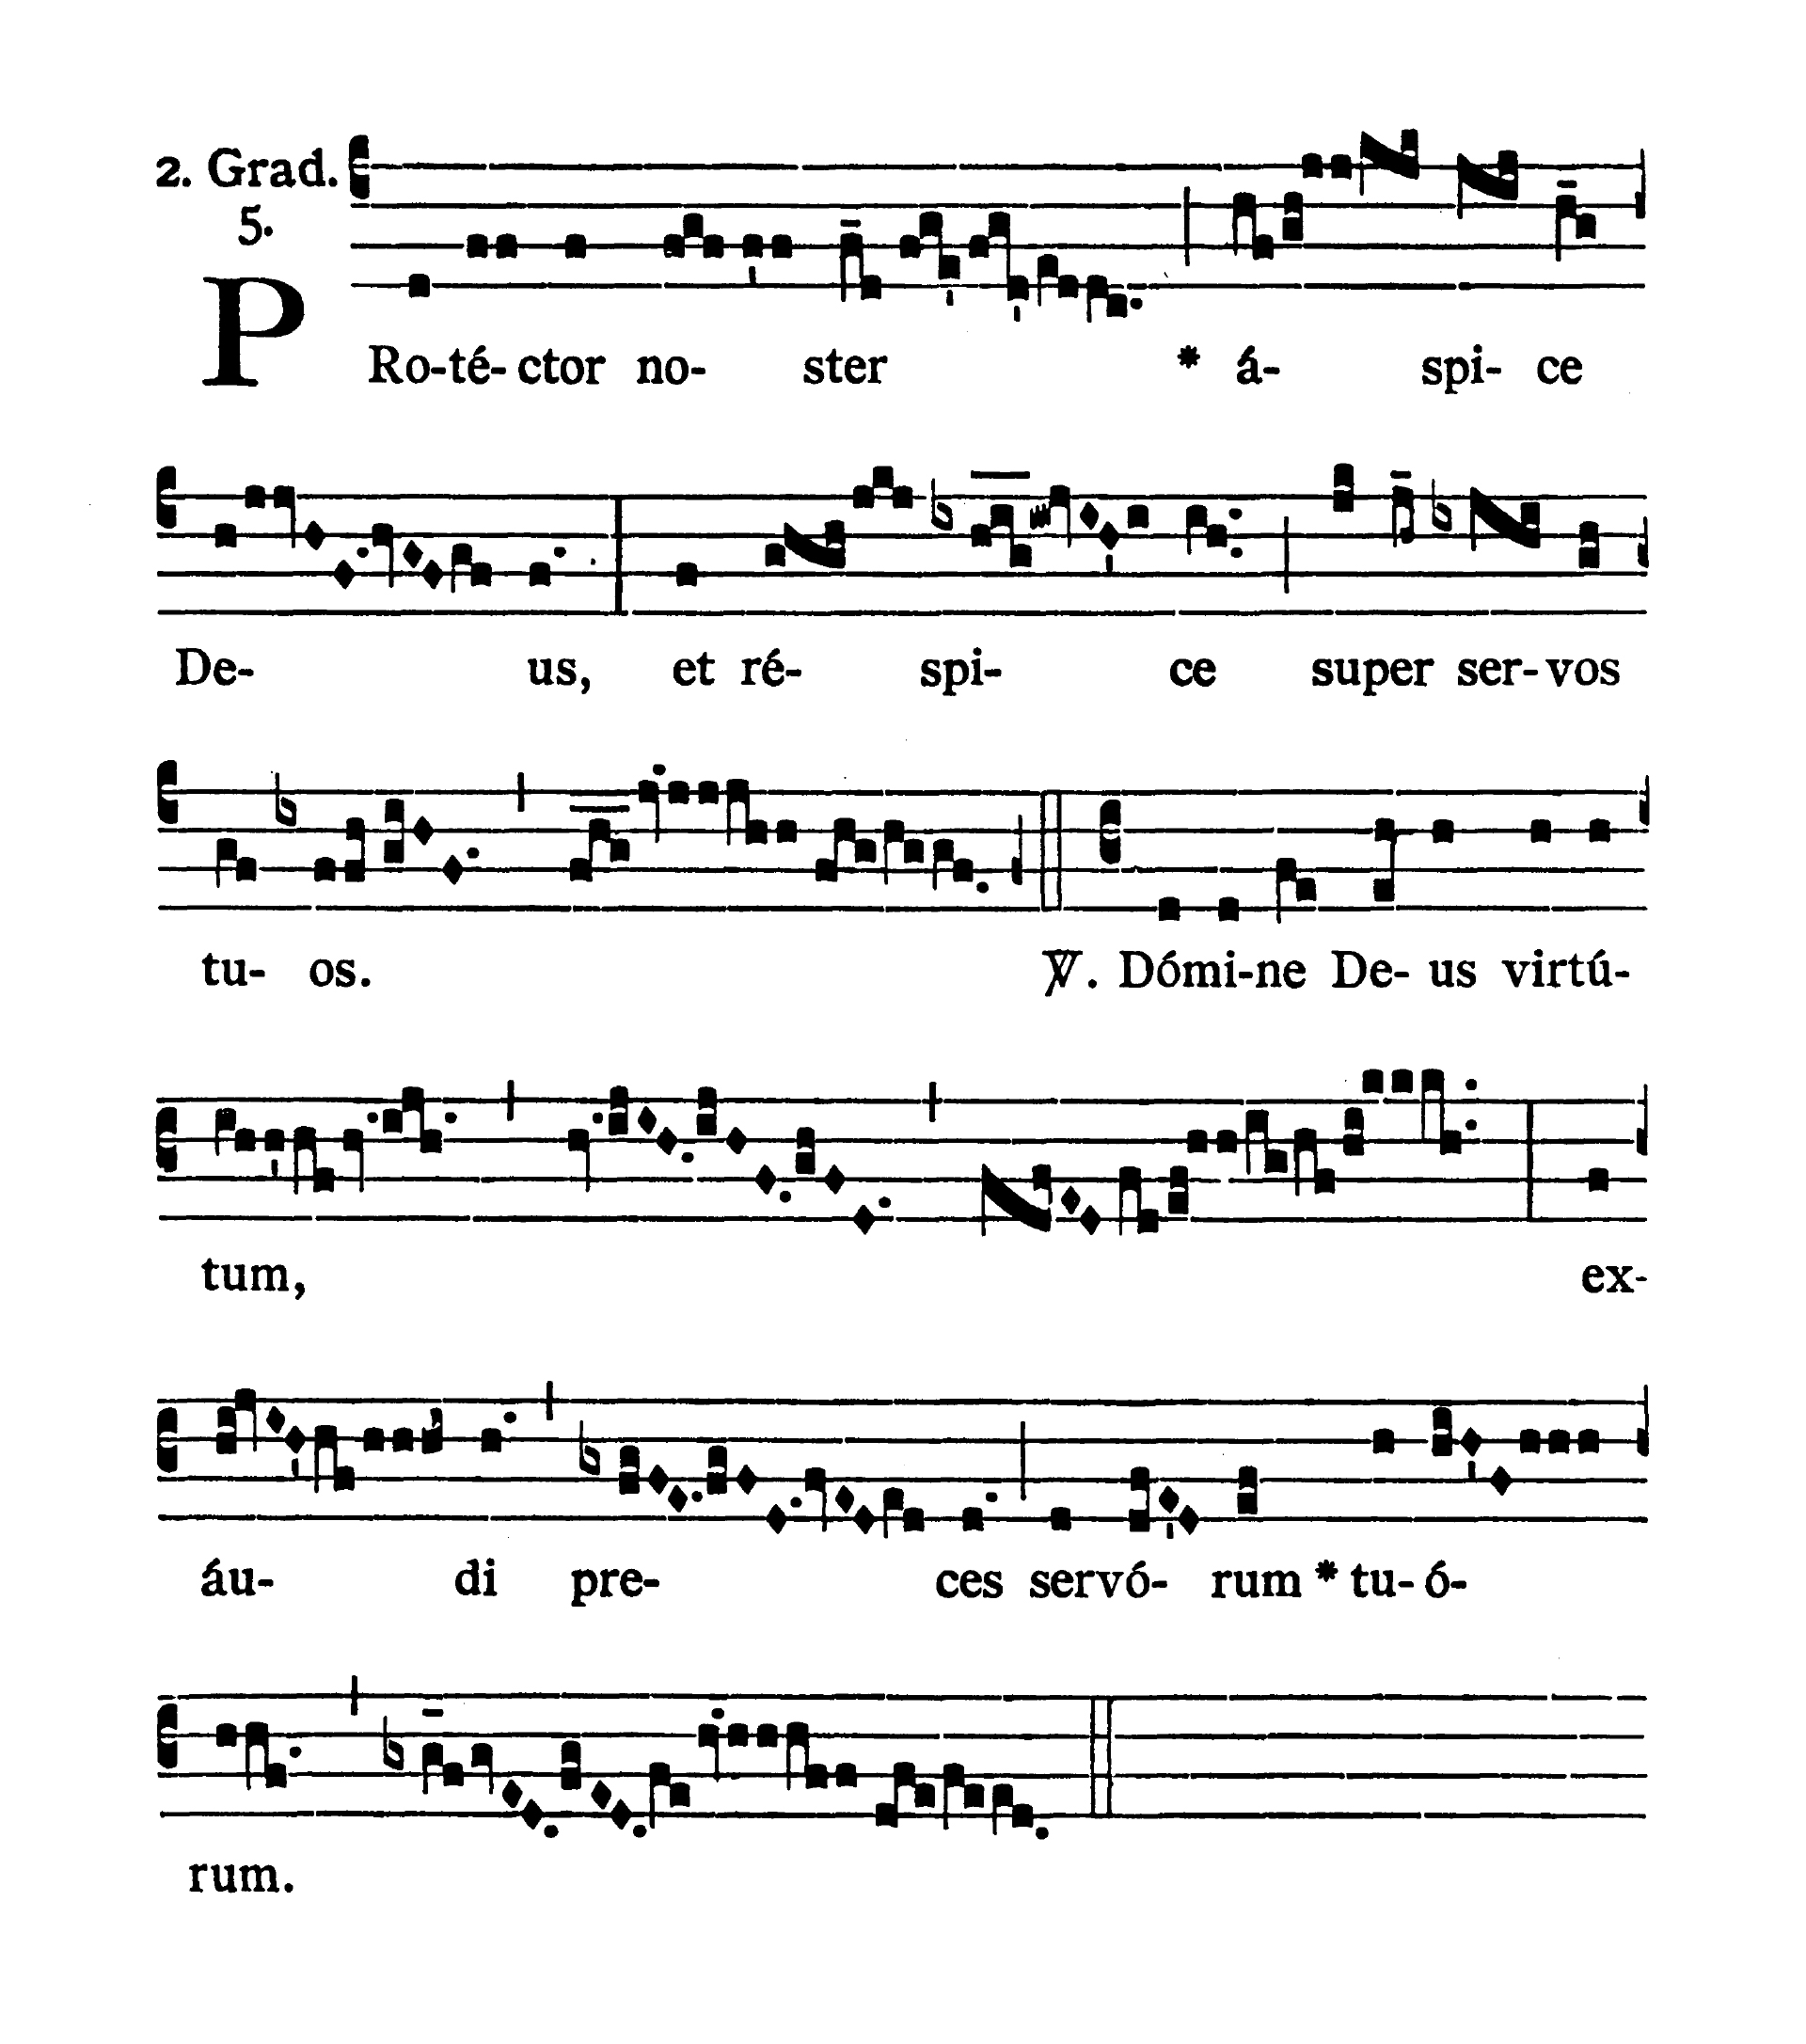 Sabbato Quatuor Temporum Quadragesimae - Graduale (Protector noster)